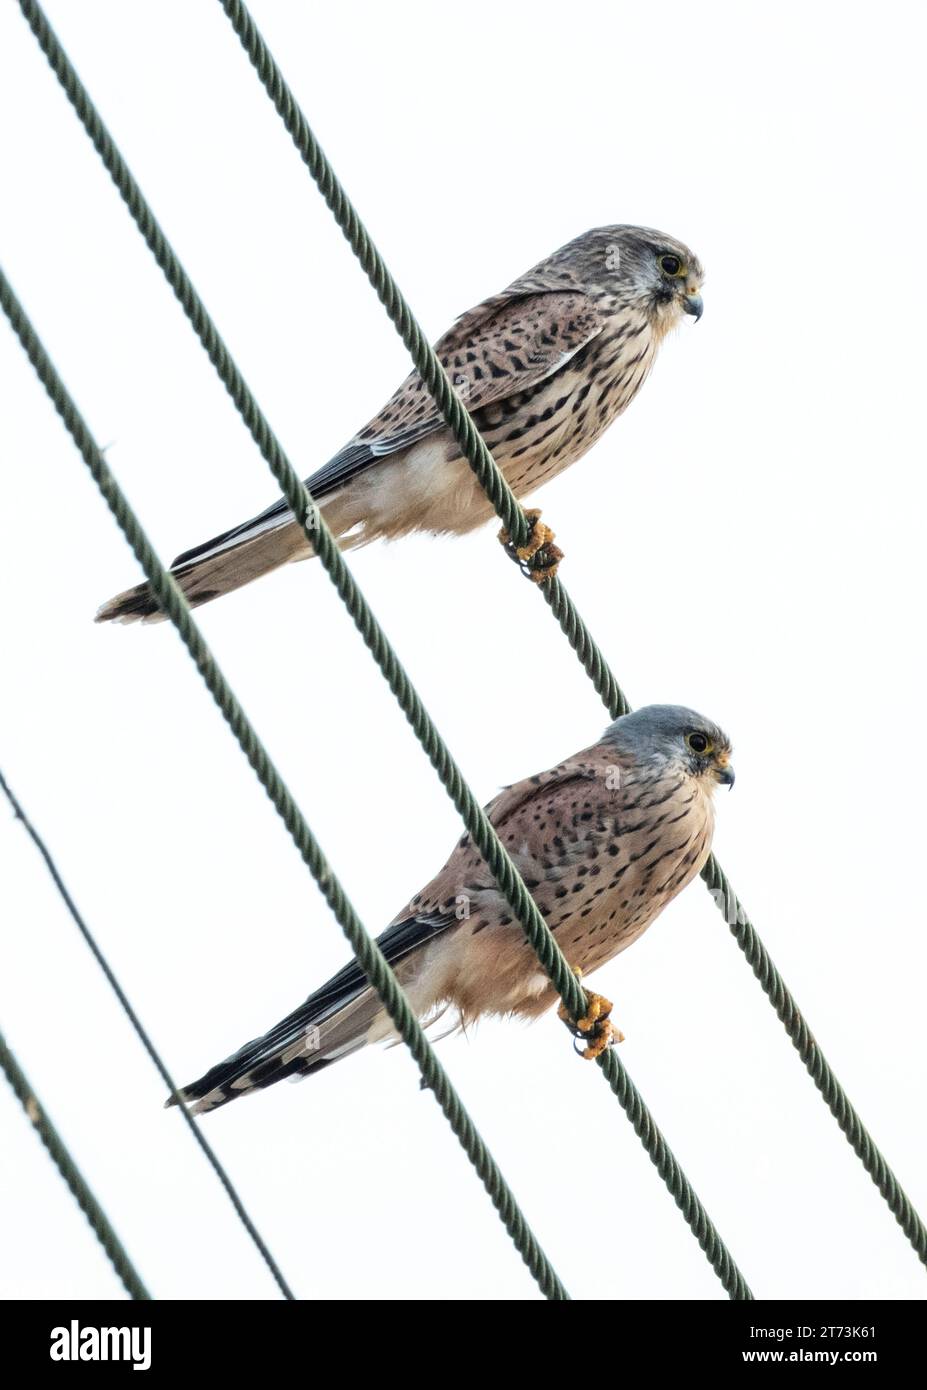 Coppia di caschi (falco tinnunculus) femmina (sinistra) e maschio arroccati insieme su linee elettriche, Mandria, Paphos, Cipro Foto Stock